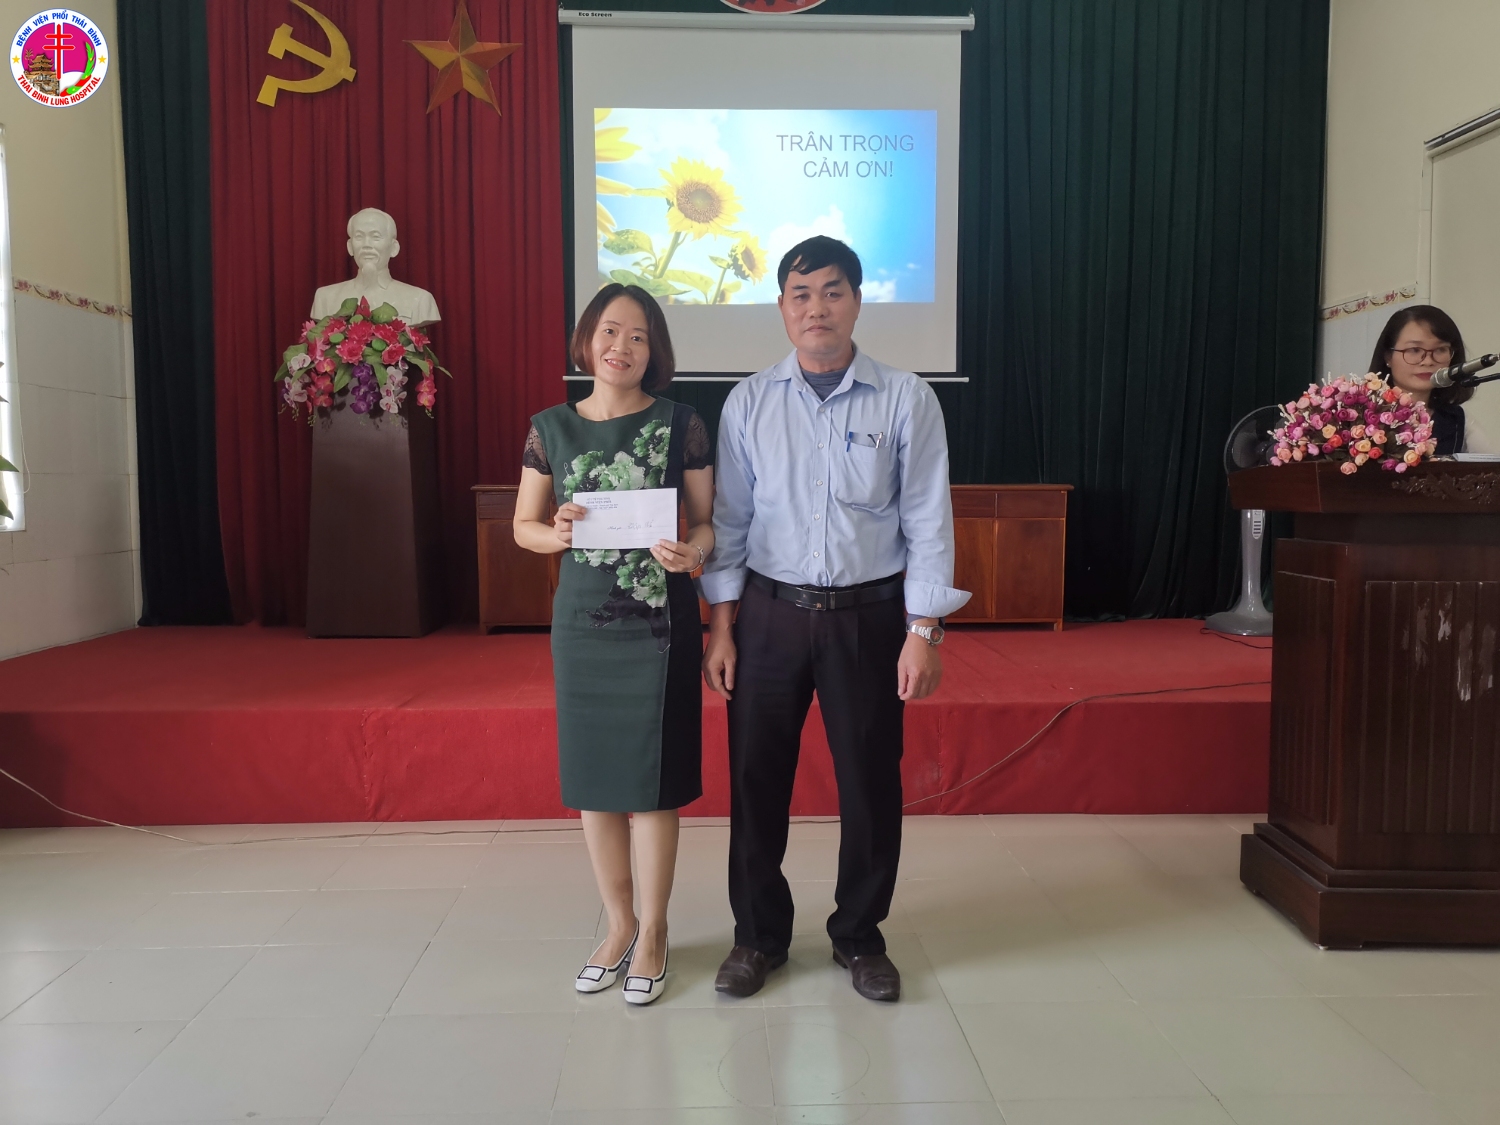 Đồng chí Trần Nam Đích - Phó Giám đốc Bệnh viện trao thưởng cho đại diện điều dưỡng khoa có thành tích xuất sắc trong công tác chăm sóc người bệnh năm 2019